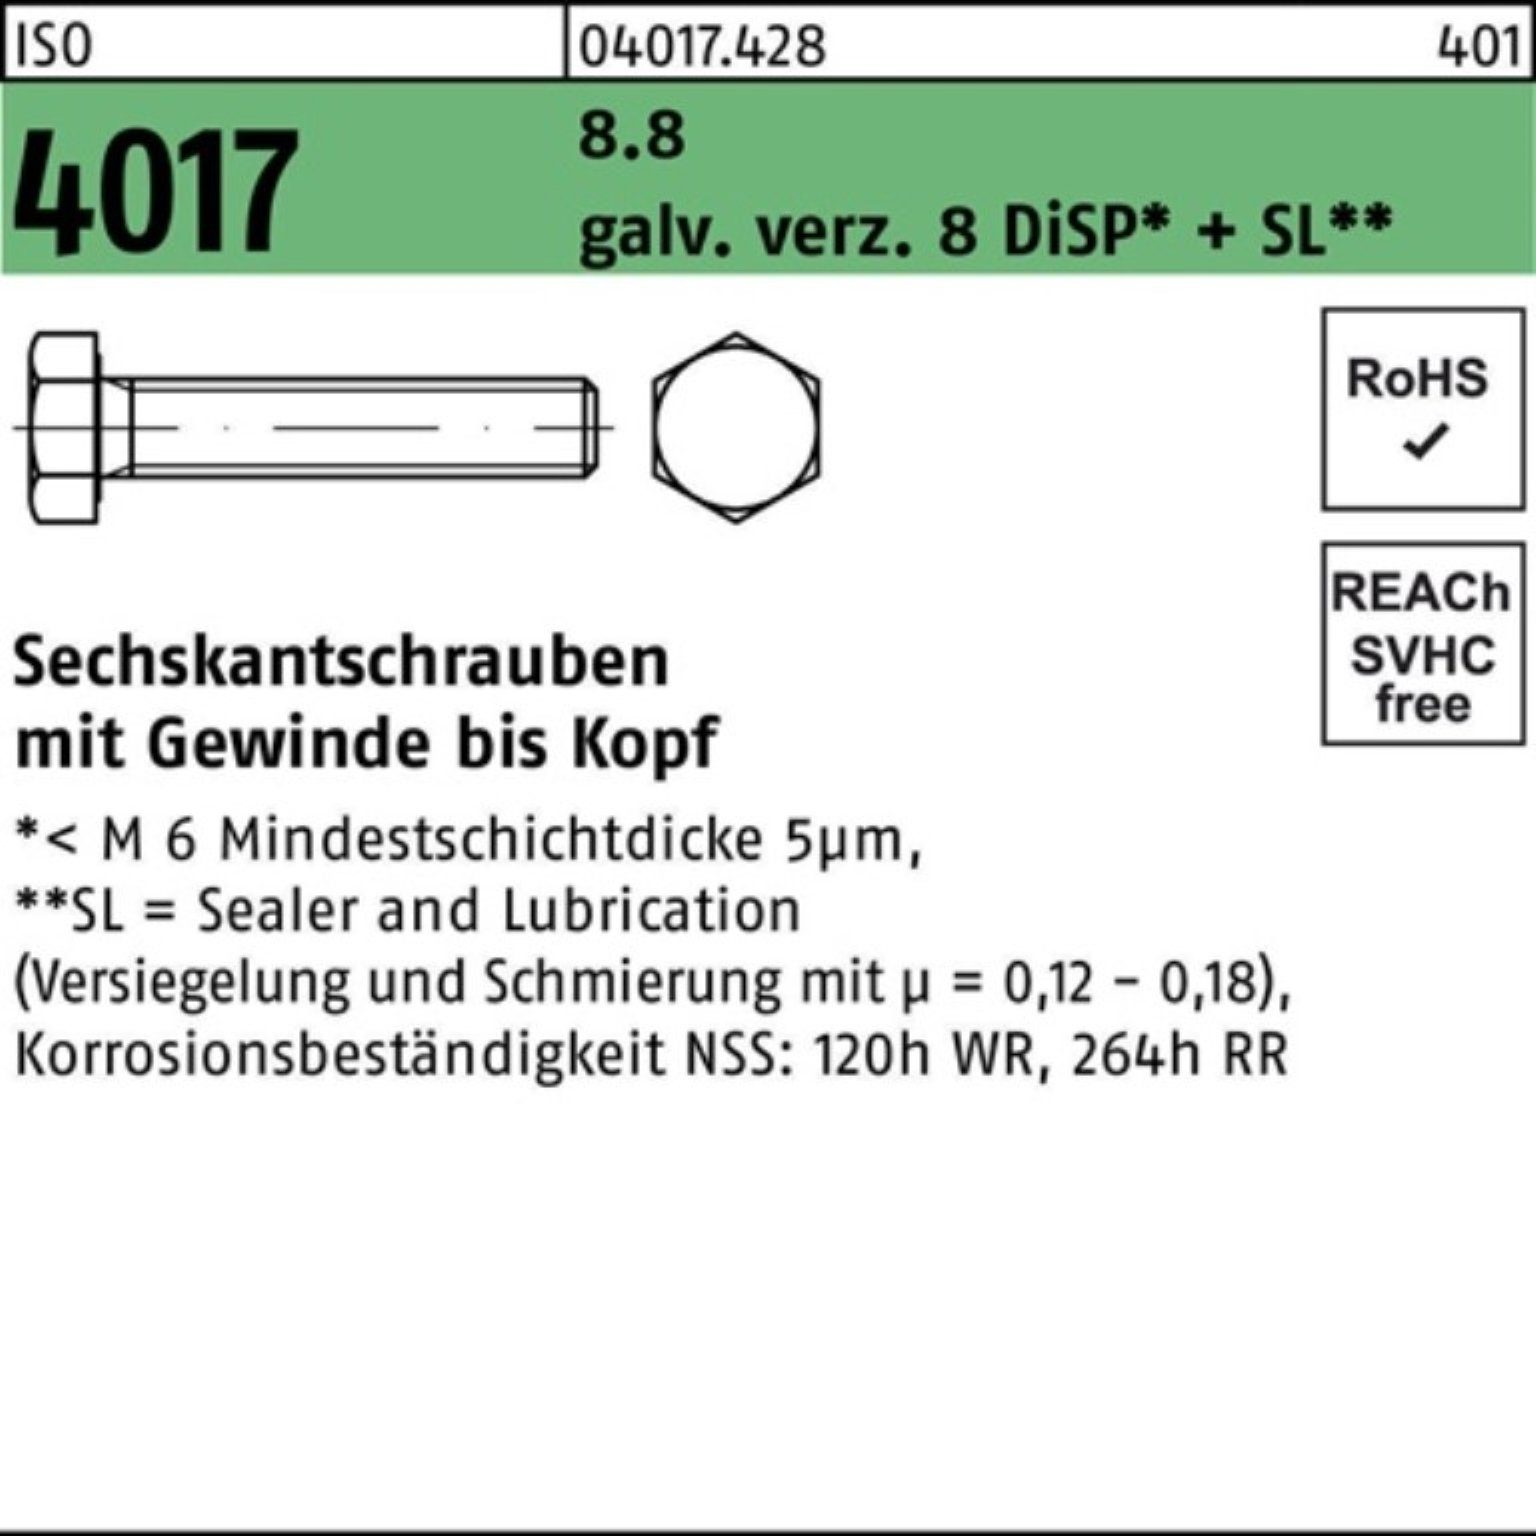 VG 200er 8.8 Sechskantschraube Bufab galv.verz. DiSP+ ISO 80 4017 M8x 8 Sechskantschraube Pack